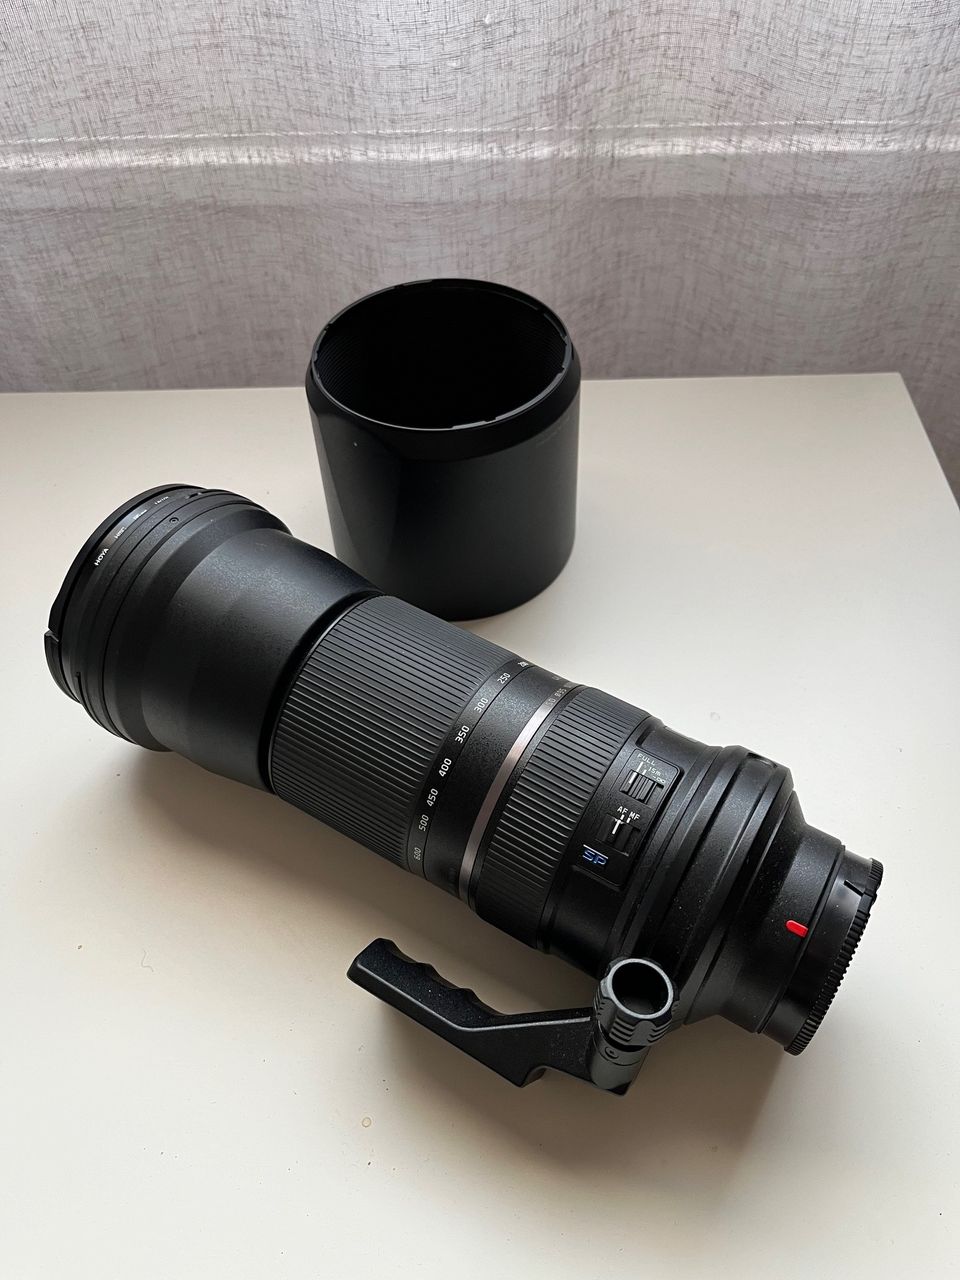 Tamron SP 150-600 mm F/5-6.3 USD Di Sony